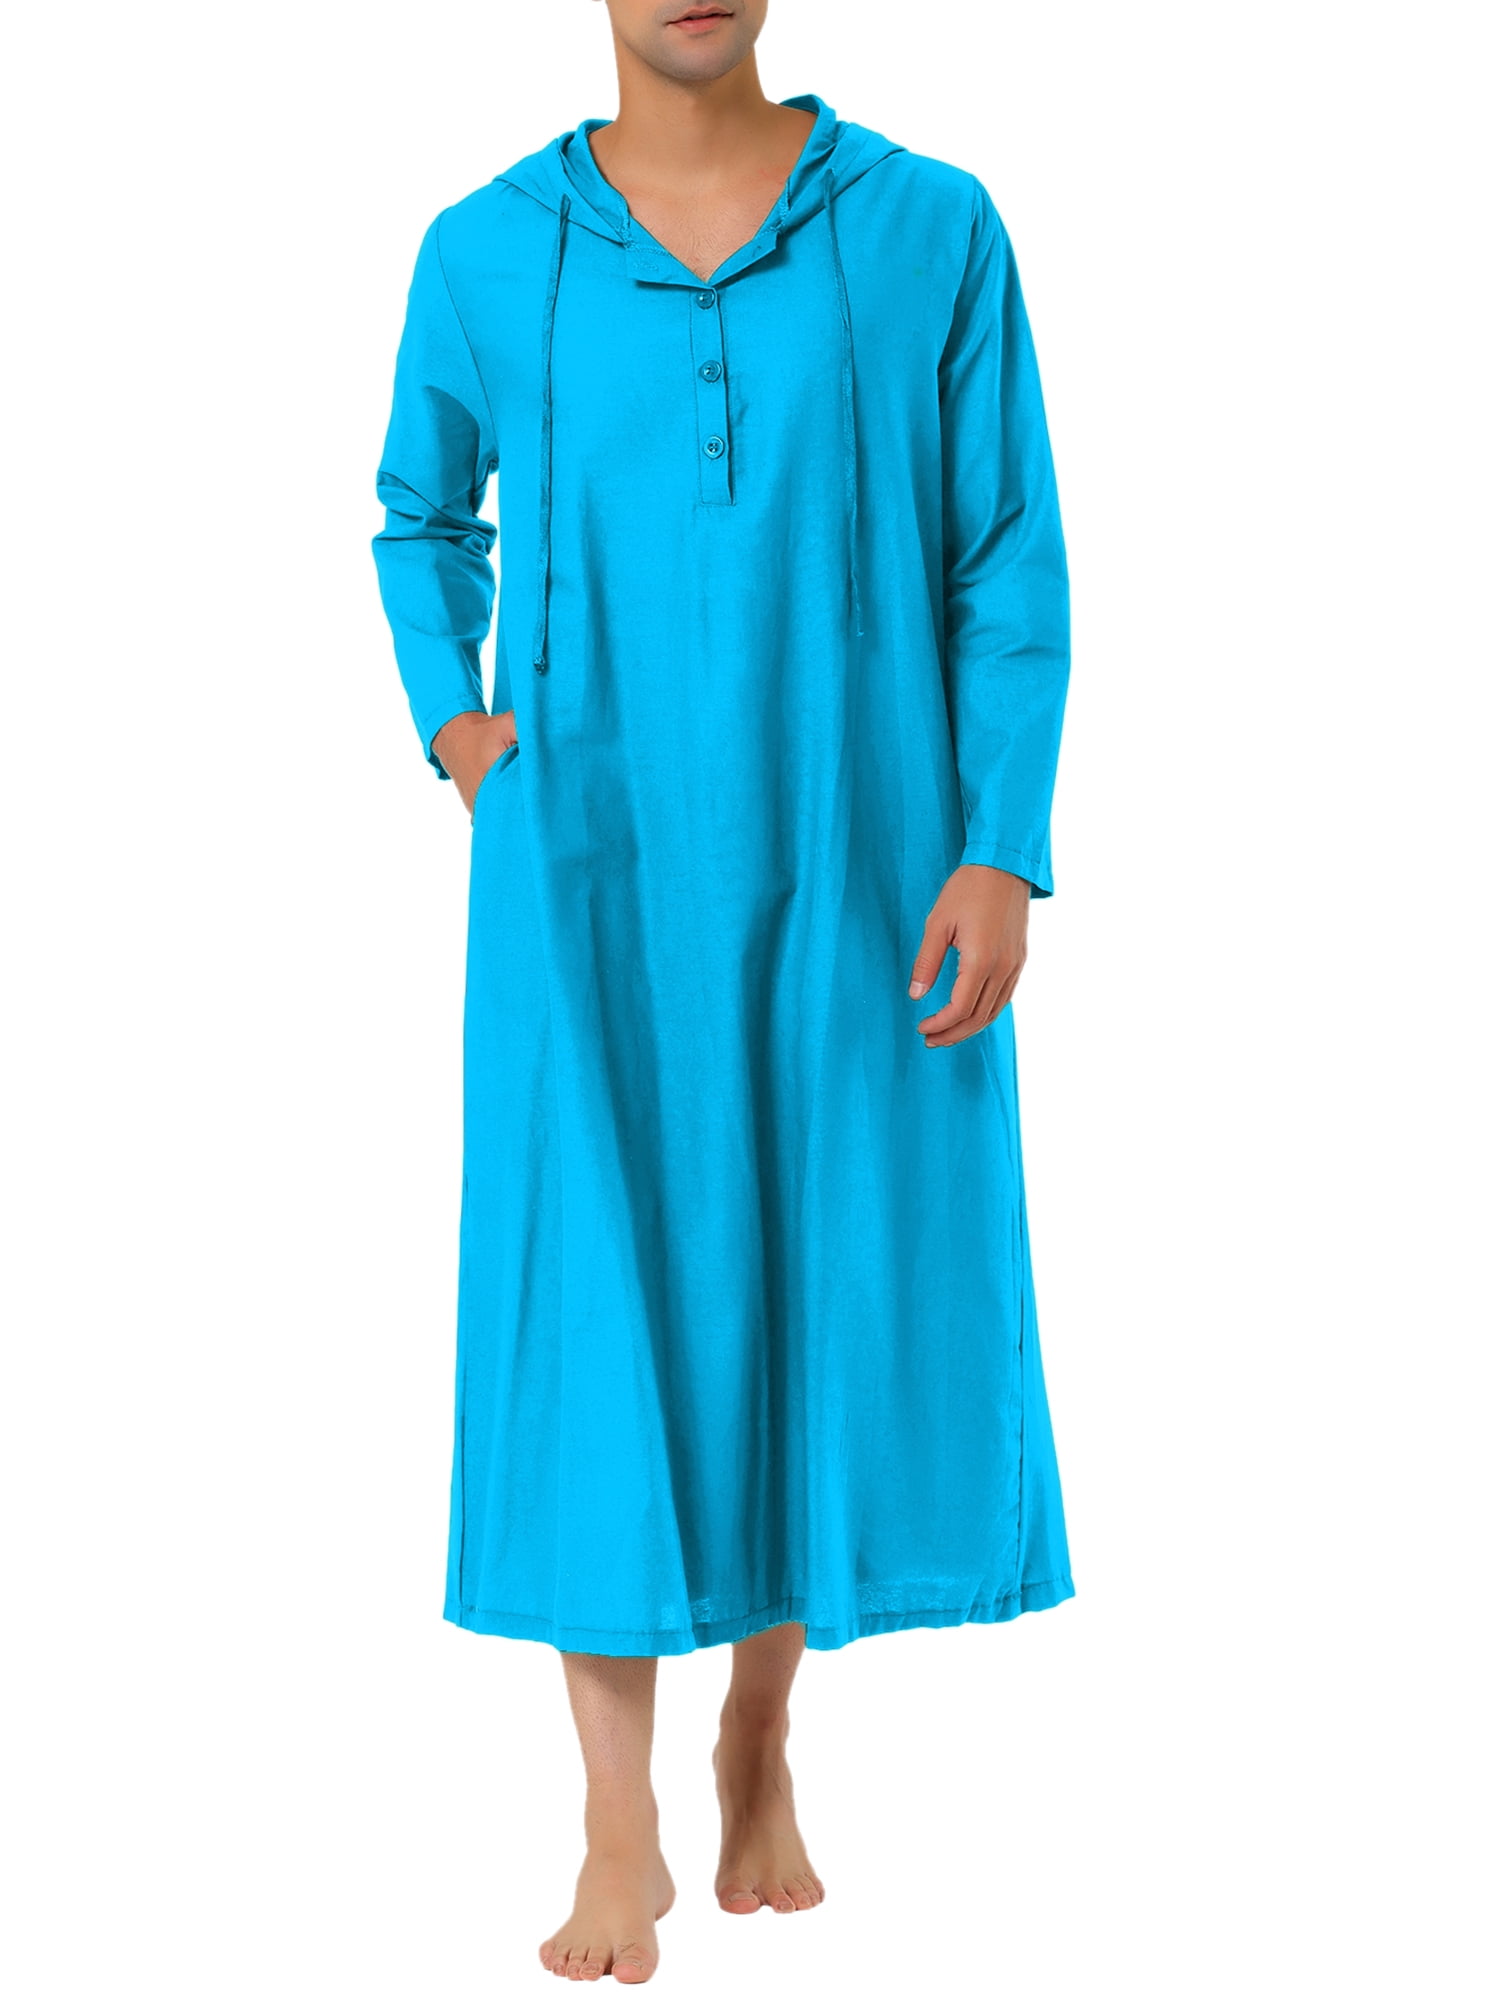 Lars Amadeus Men's Nightshirt Long Sleeves Hooded Loungewear Nightgown ...